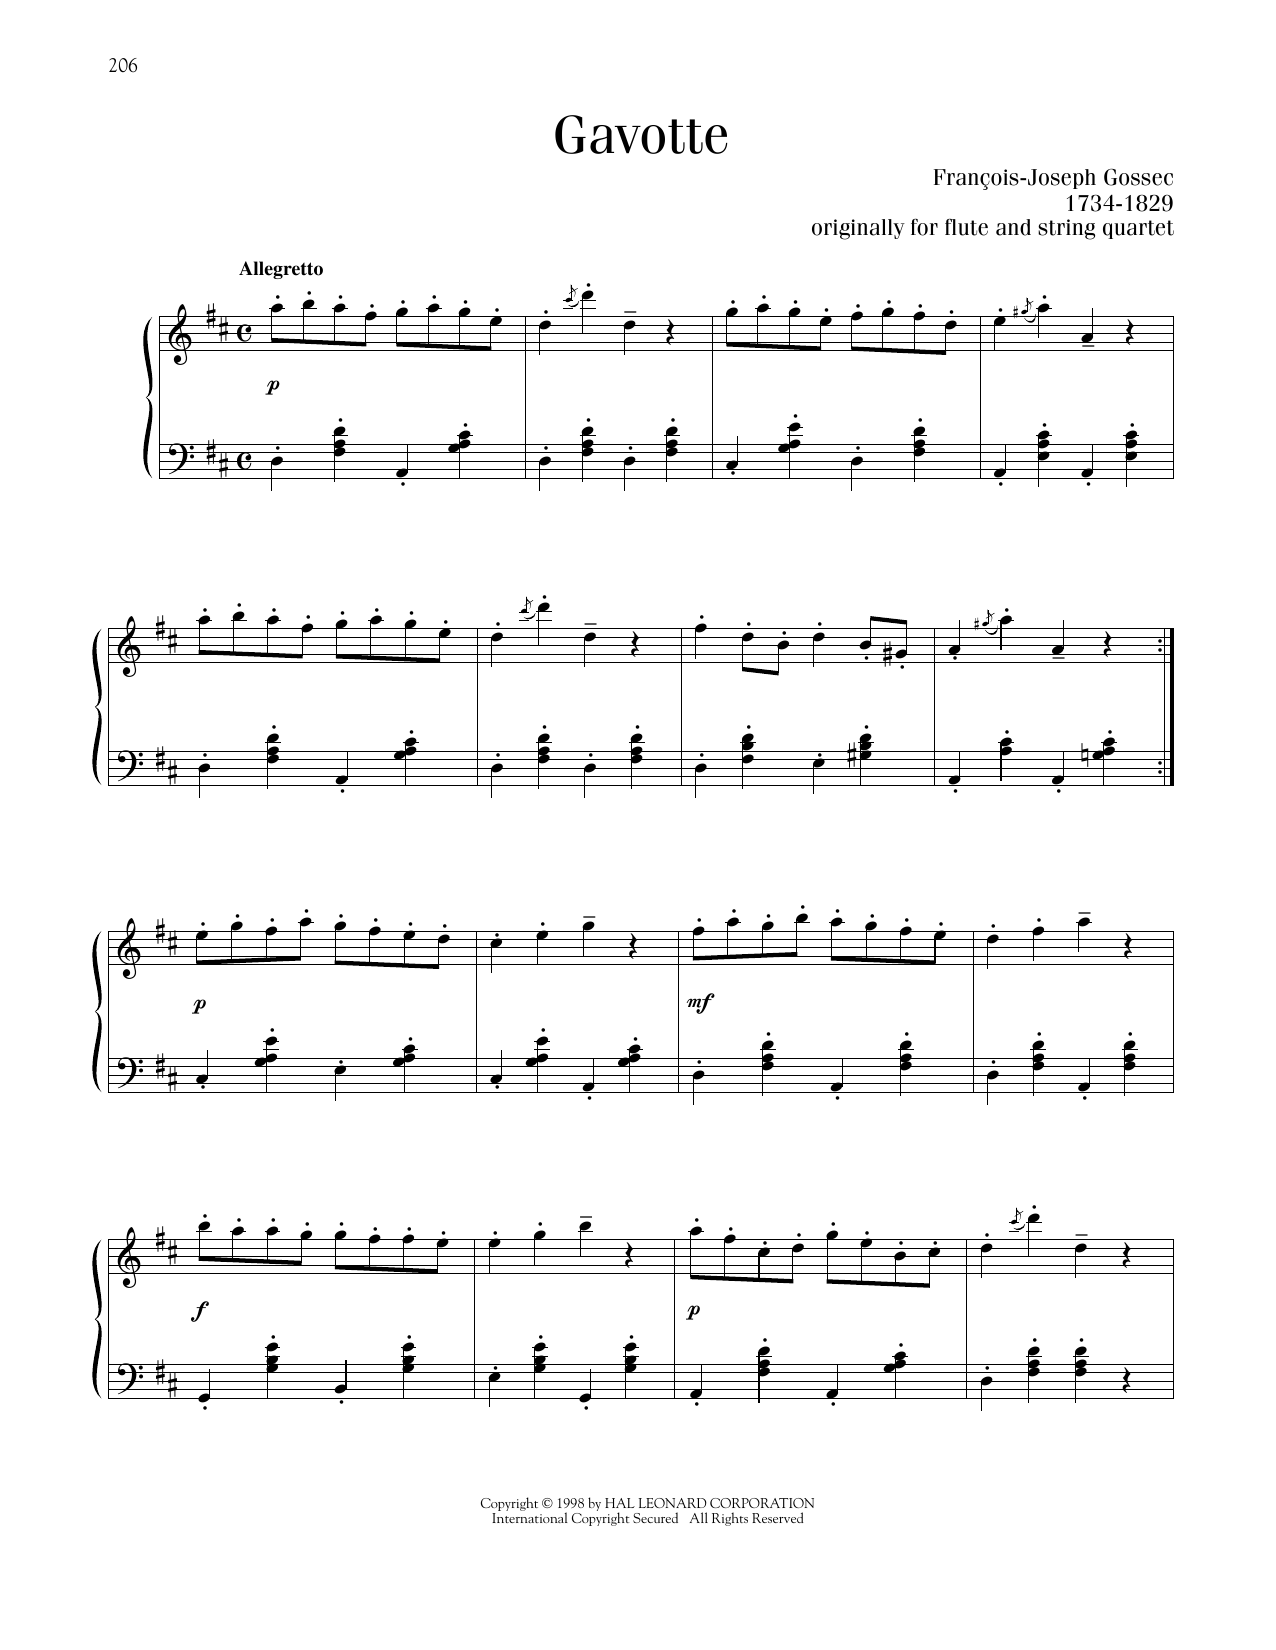 Francois-Joseph Gossec Gavotte sheet music notes printable PDF score